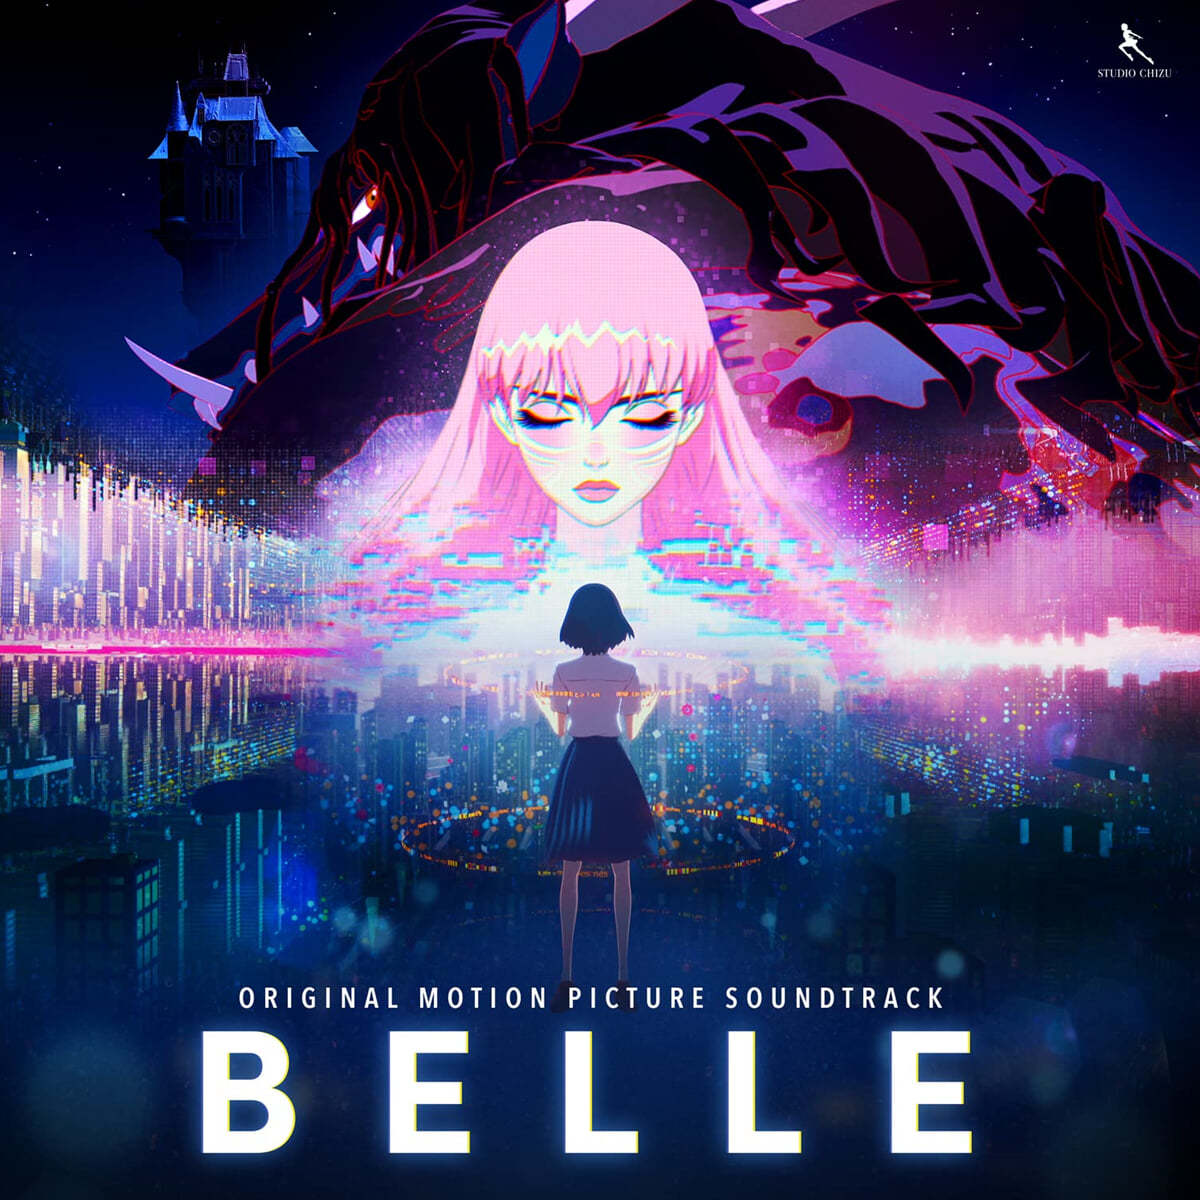 용과 주근깨 공주 영화음악 (Belle OST by Taisei Iwasaki) [핑크 & 블루 컬러 2LP]